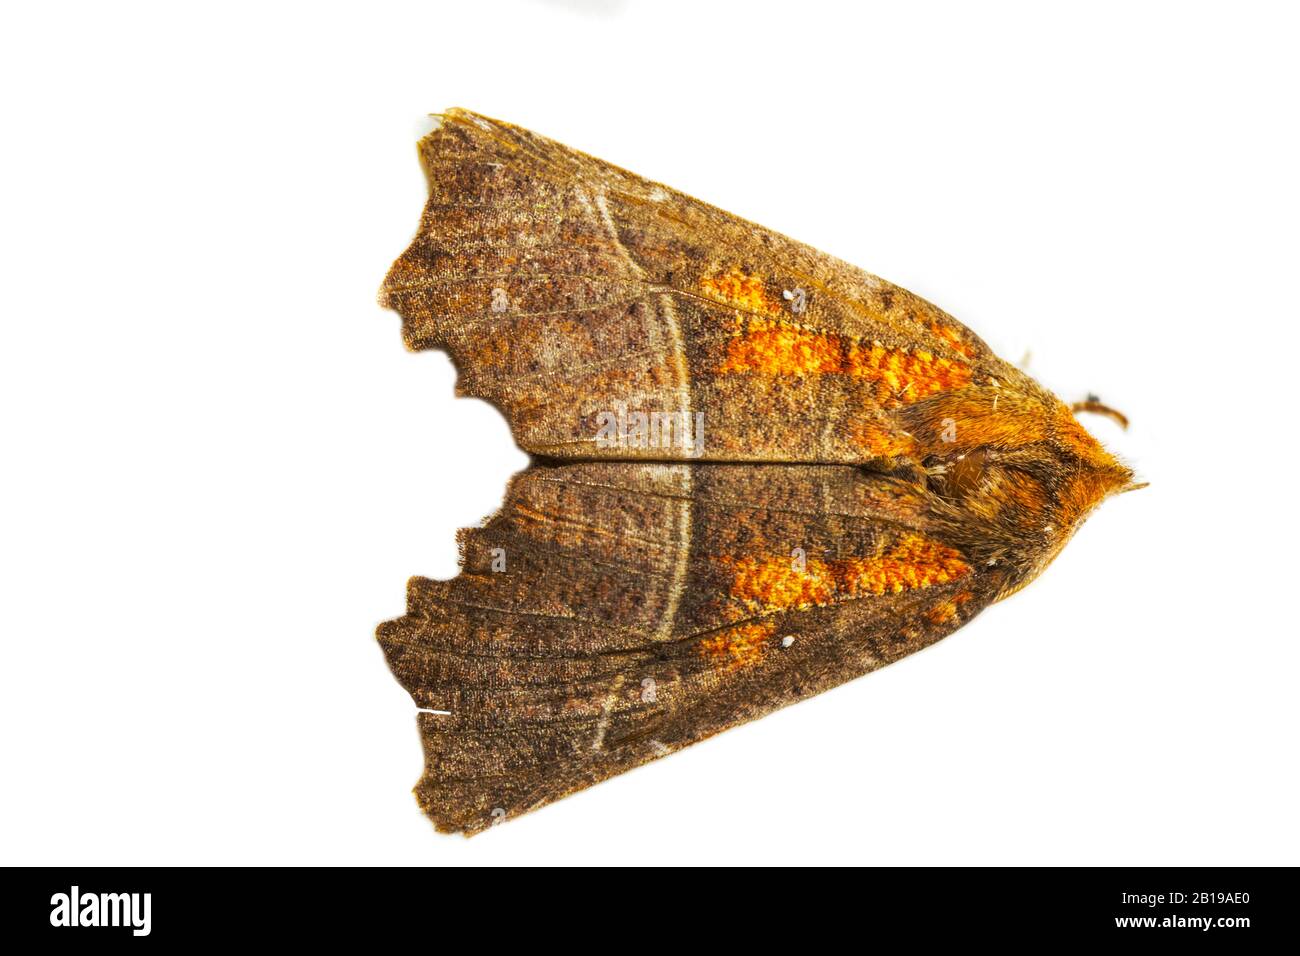 Herald, nnoctuide moth (Scoliopteryx libatrix, Scoliopterix libatrix), ritaglio, Paesi Bassi, Friesland FryslÃ¢n Foto Stock